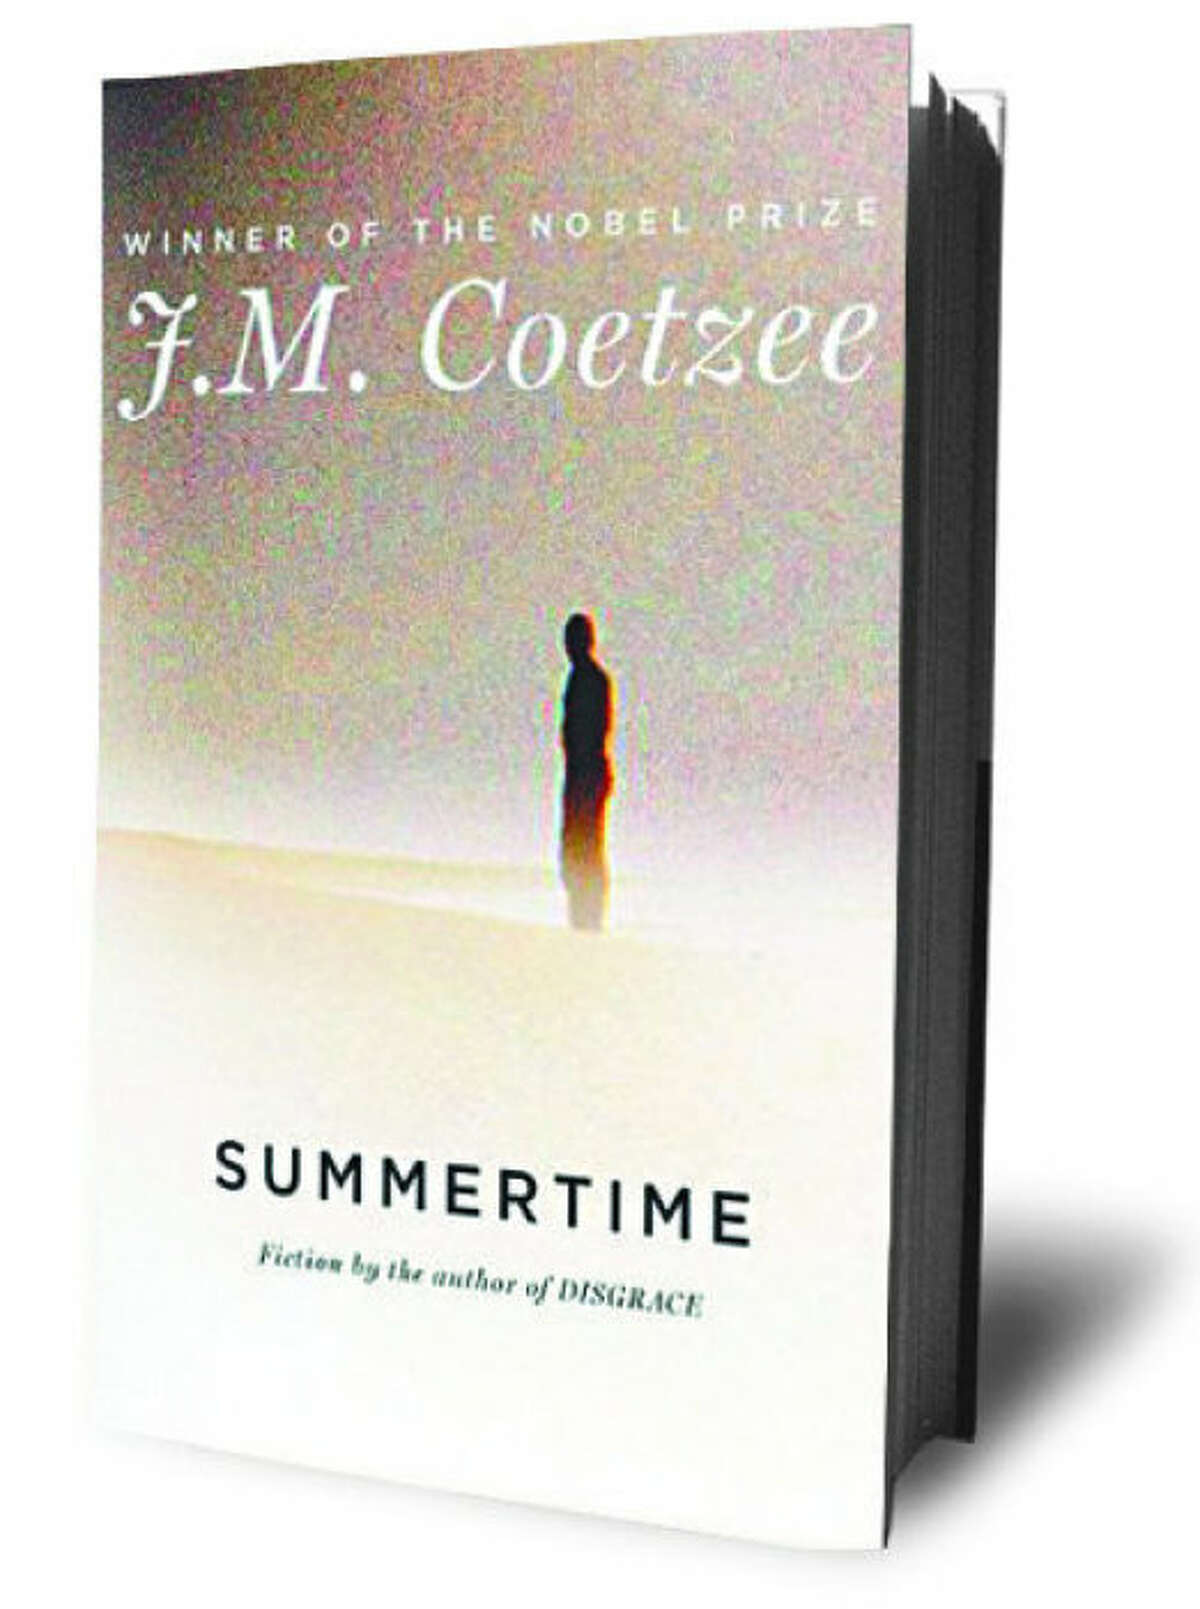 Summertime by J.M. Coetzee